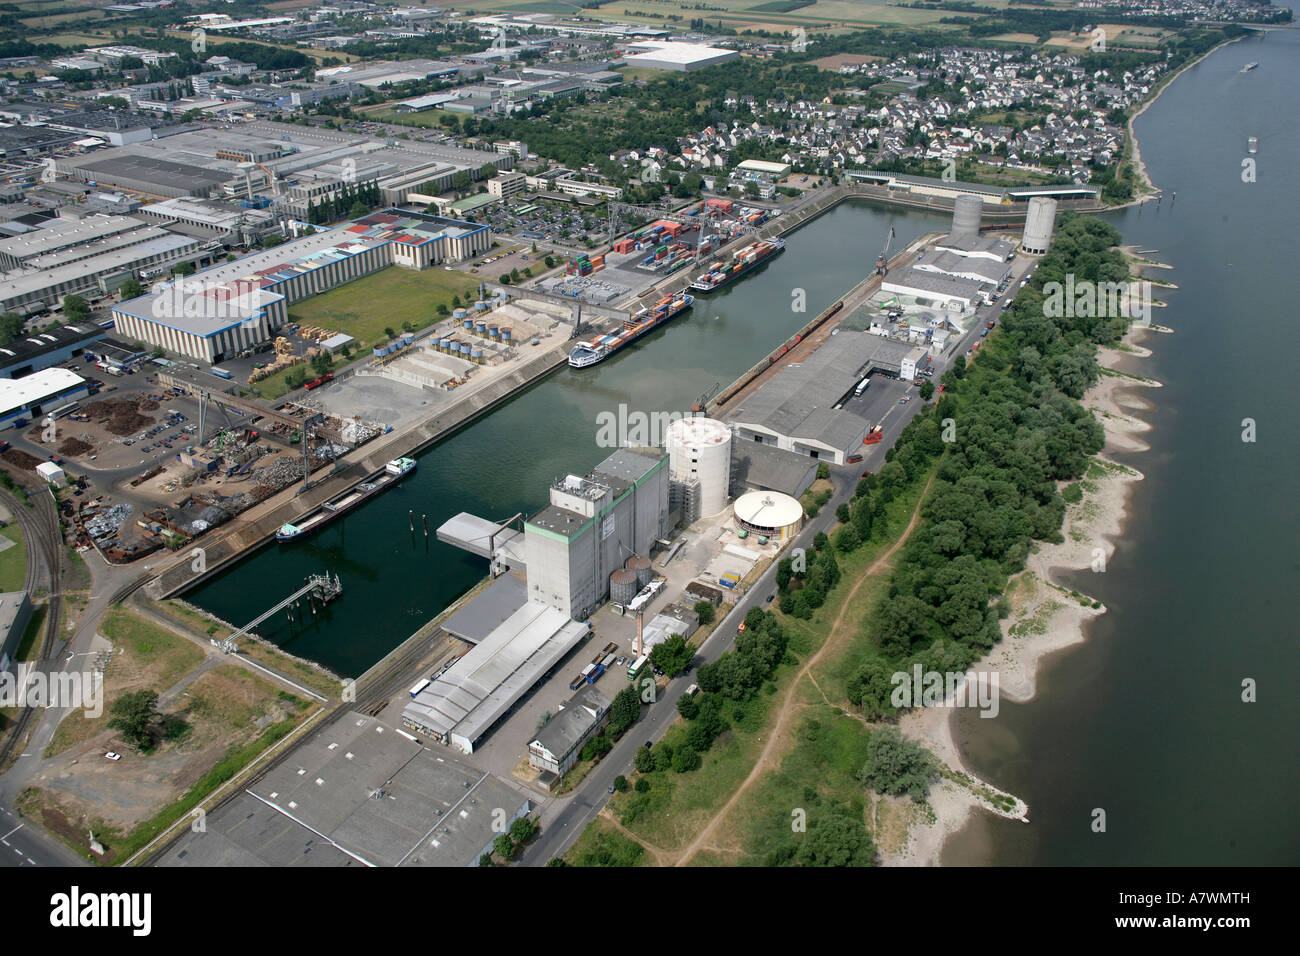 Harbor of Koblenz, Rhineland-Palatinate, Germany Stock Photo